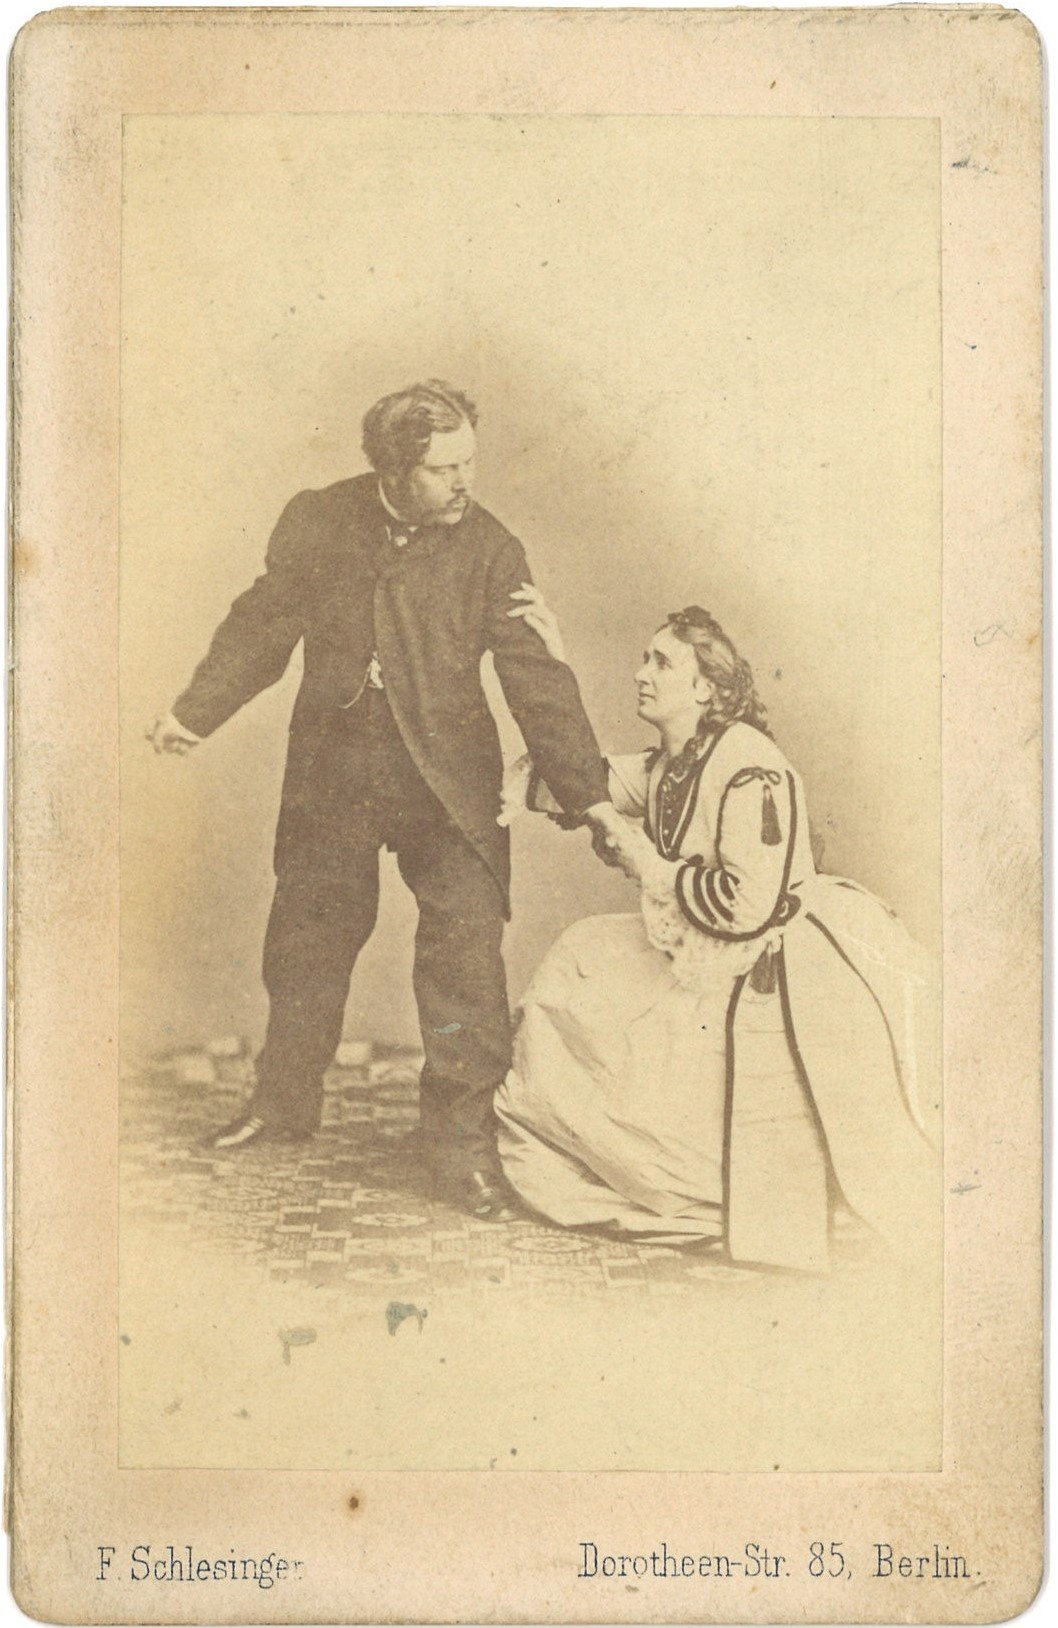 Mittell, Carl (1824–1889), Schauspieler, und Wallner, Agnes, geb. Kretschmar (1824–1901), Schauspielerin (Landesgeschichtliche Vereinigung für die Mark Brandenburg e.V., Archiv CC BY)